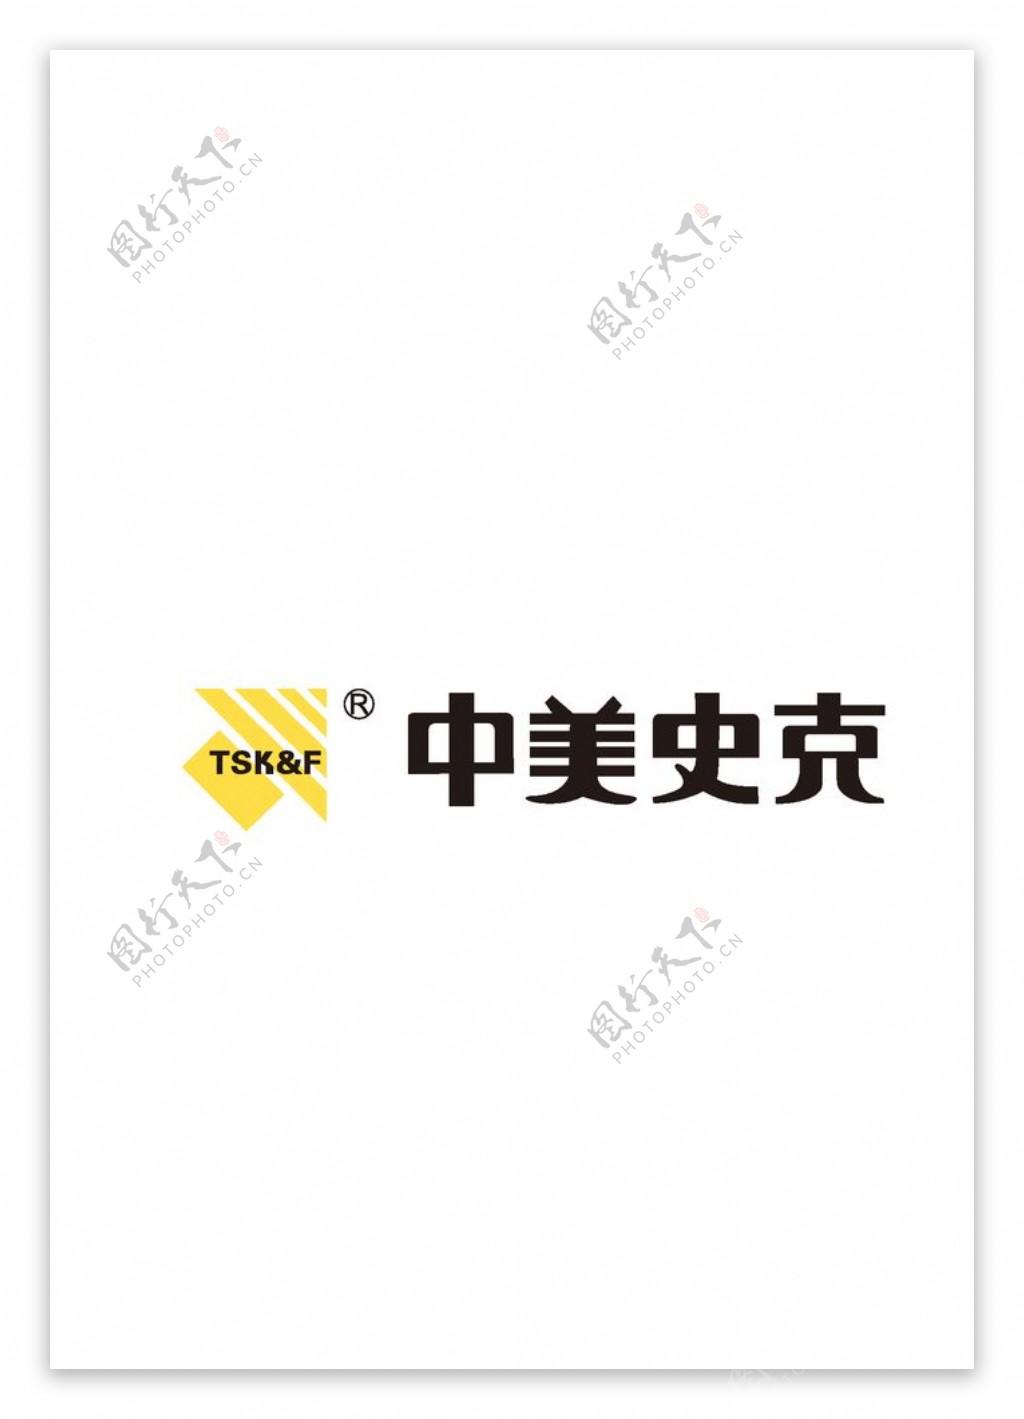 中美史克logo图片